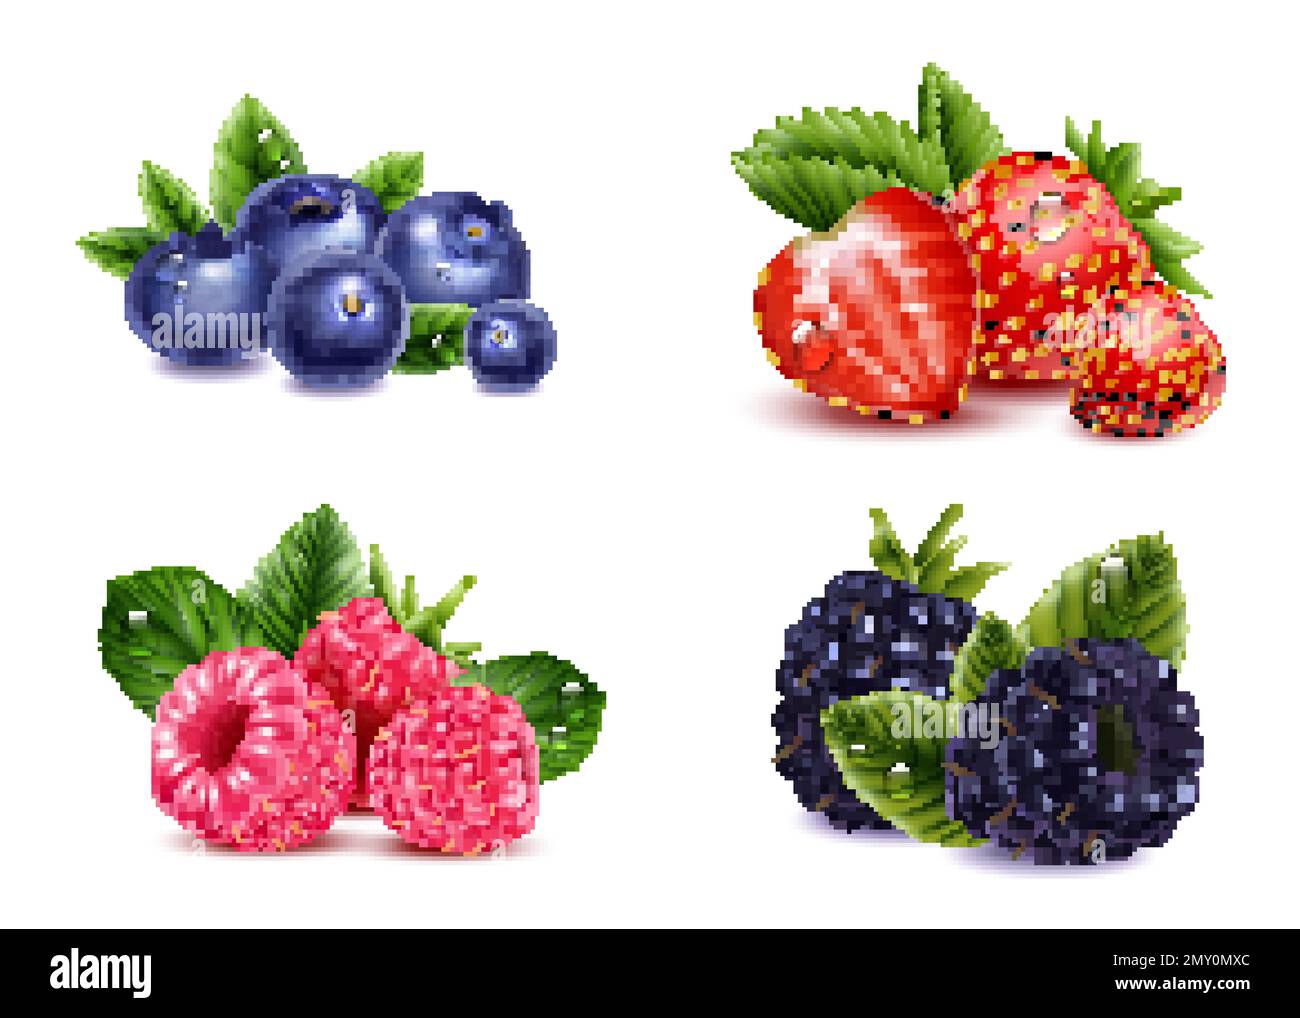 Set trasparente di frutti di bosco realistico con immagini isolate di mora di fragola di lampone e mirtilli rossi con illustrazione vettoriale delle foglie Illustrazione Vettoriale